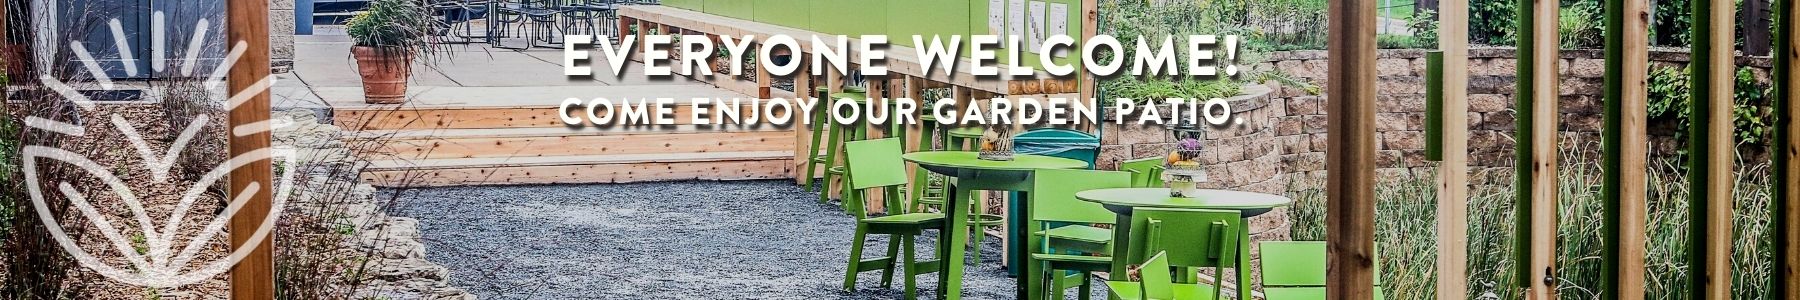 Everyone Welcome to Enjoy Our Garden Patio-